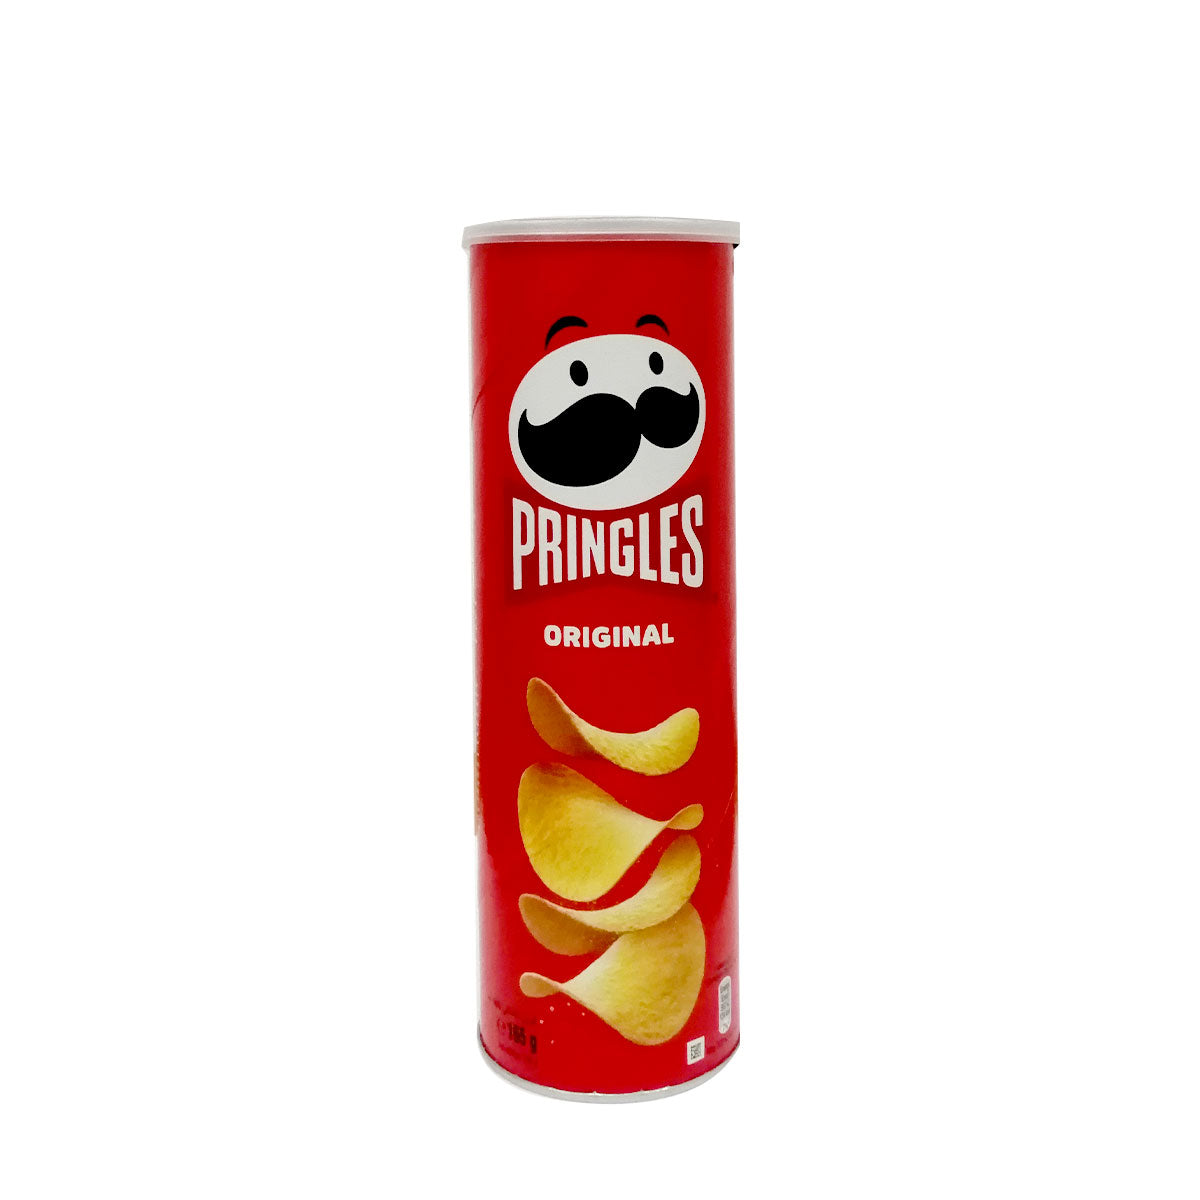 Pringles Original 165 g برنغلز بالطعم الأصلي